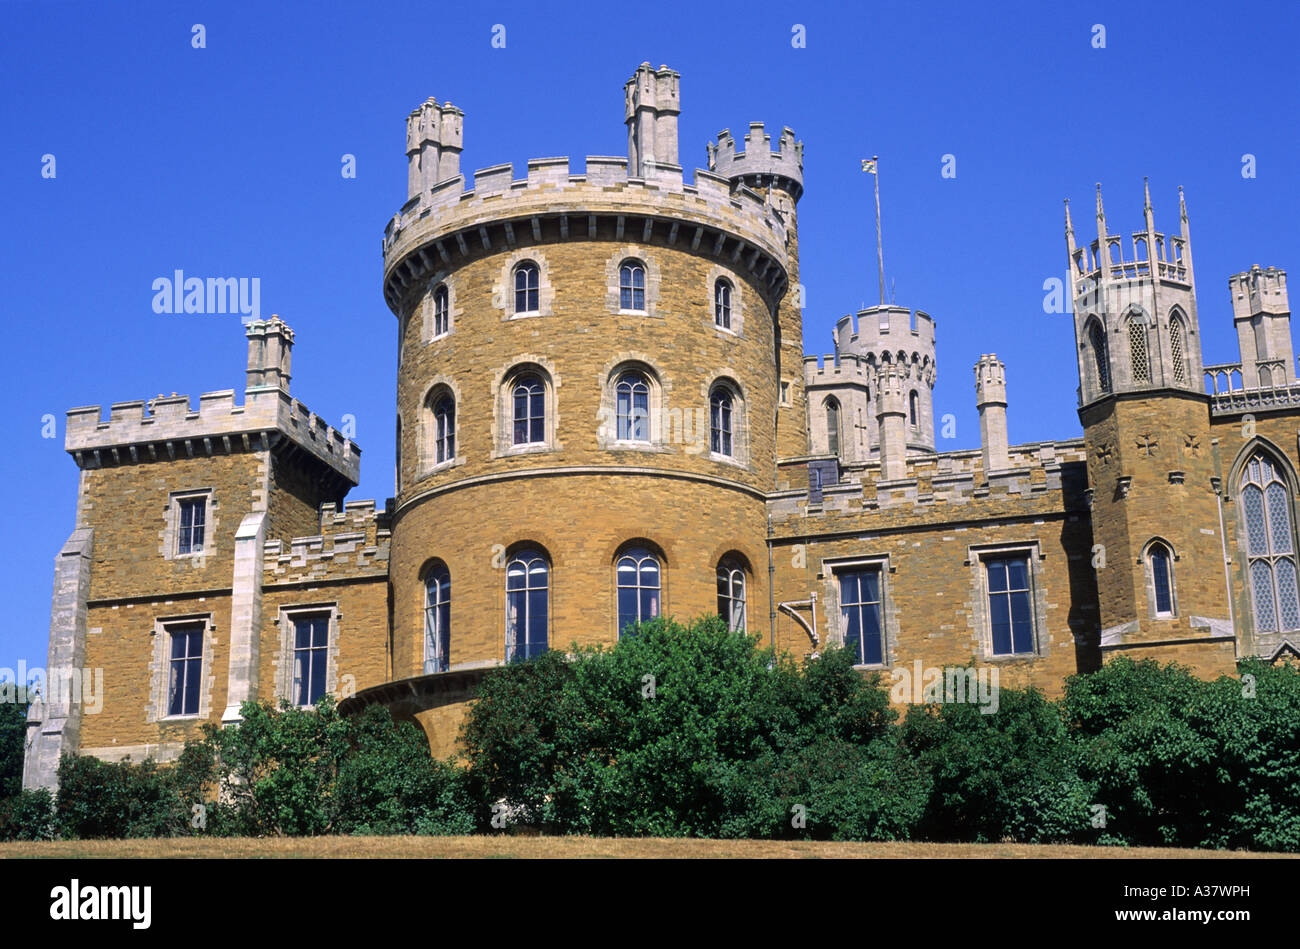 Castillo de Belvoir, Leicestershire, señorial casa solariega inglesa, Inglaterra, Reino Unido, viajes, turismo, arquitectura, almenas romántico Foto de stock